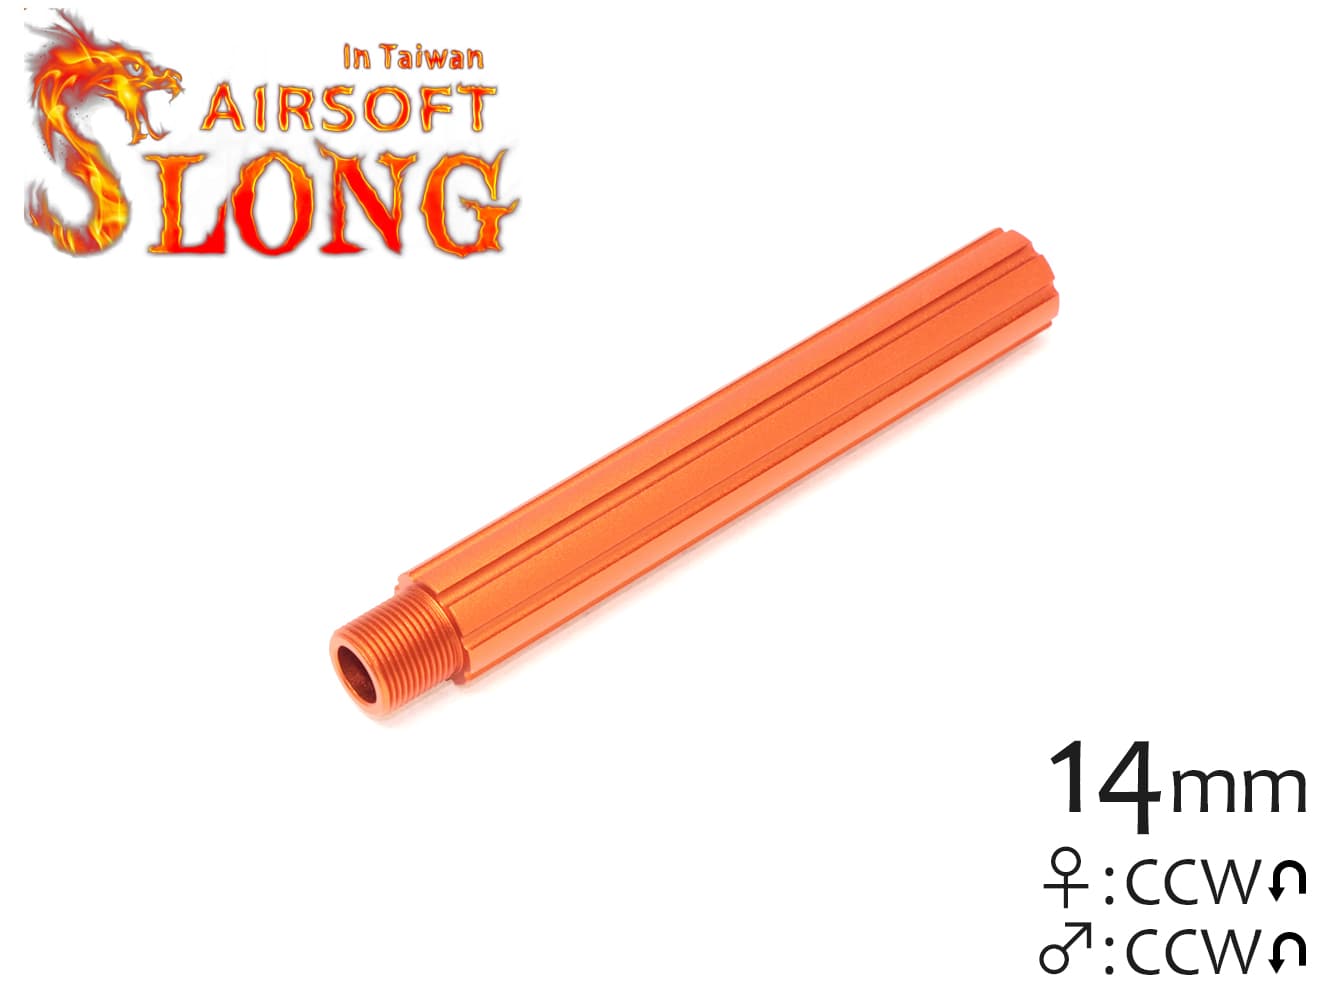 SLONG AIRSOFT 116mm アウターバレルエクステンション ストライプ 14mm逆ネジ [カラー：ブラック / オレンジ / ゴールド]